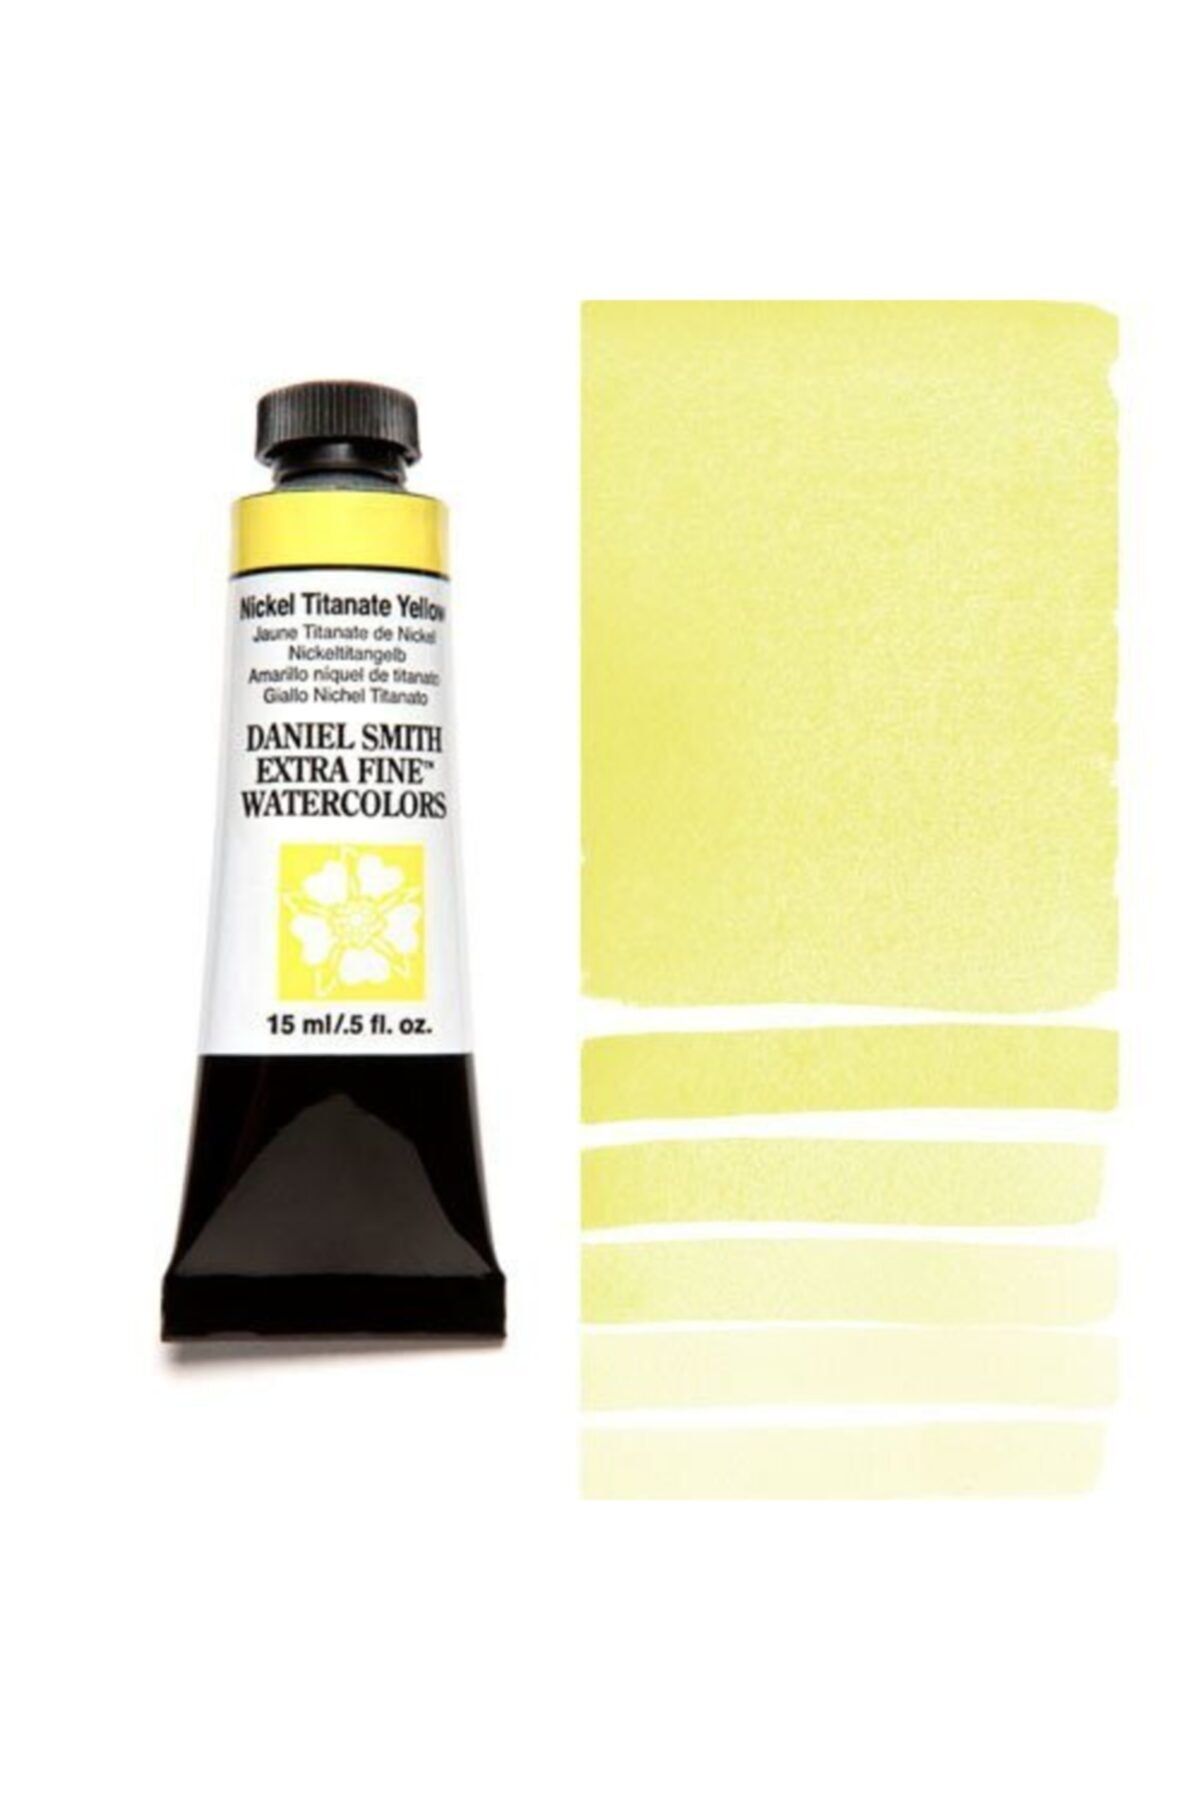 Daniel Smith Danıel Smıth Water Color Tube 15 Ml Seri 1 Nıckel Tıtanate Yellow